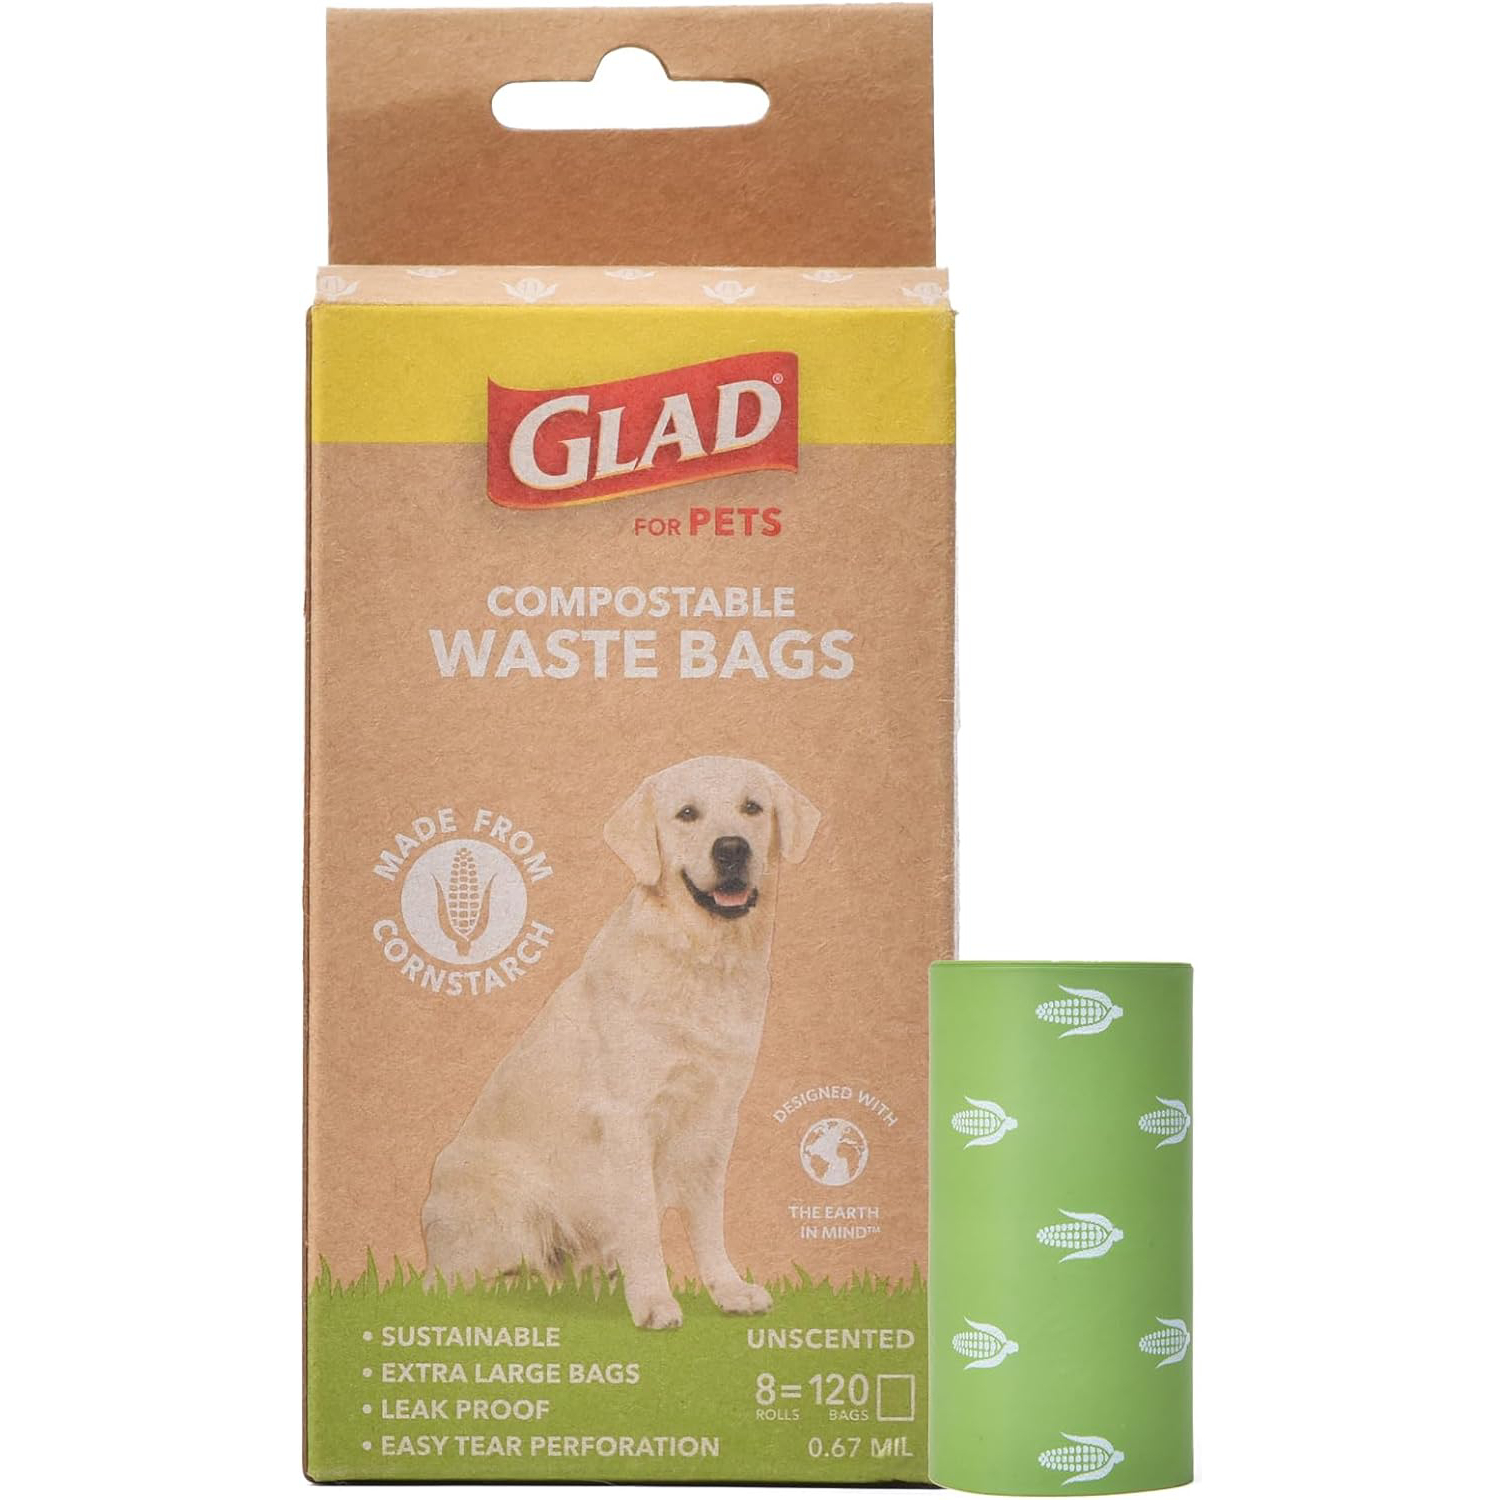 Glad for Pets Compostable Dog Waste Poop Bags